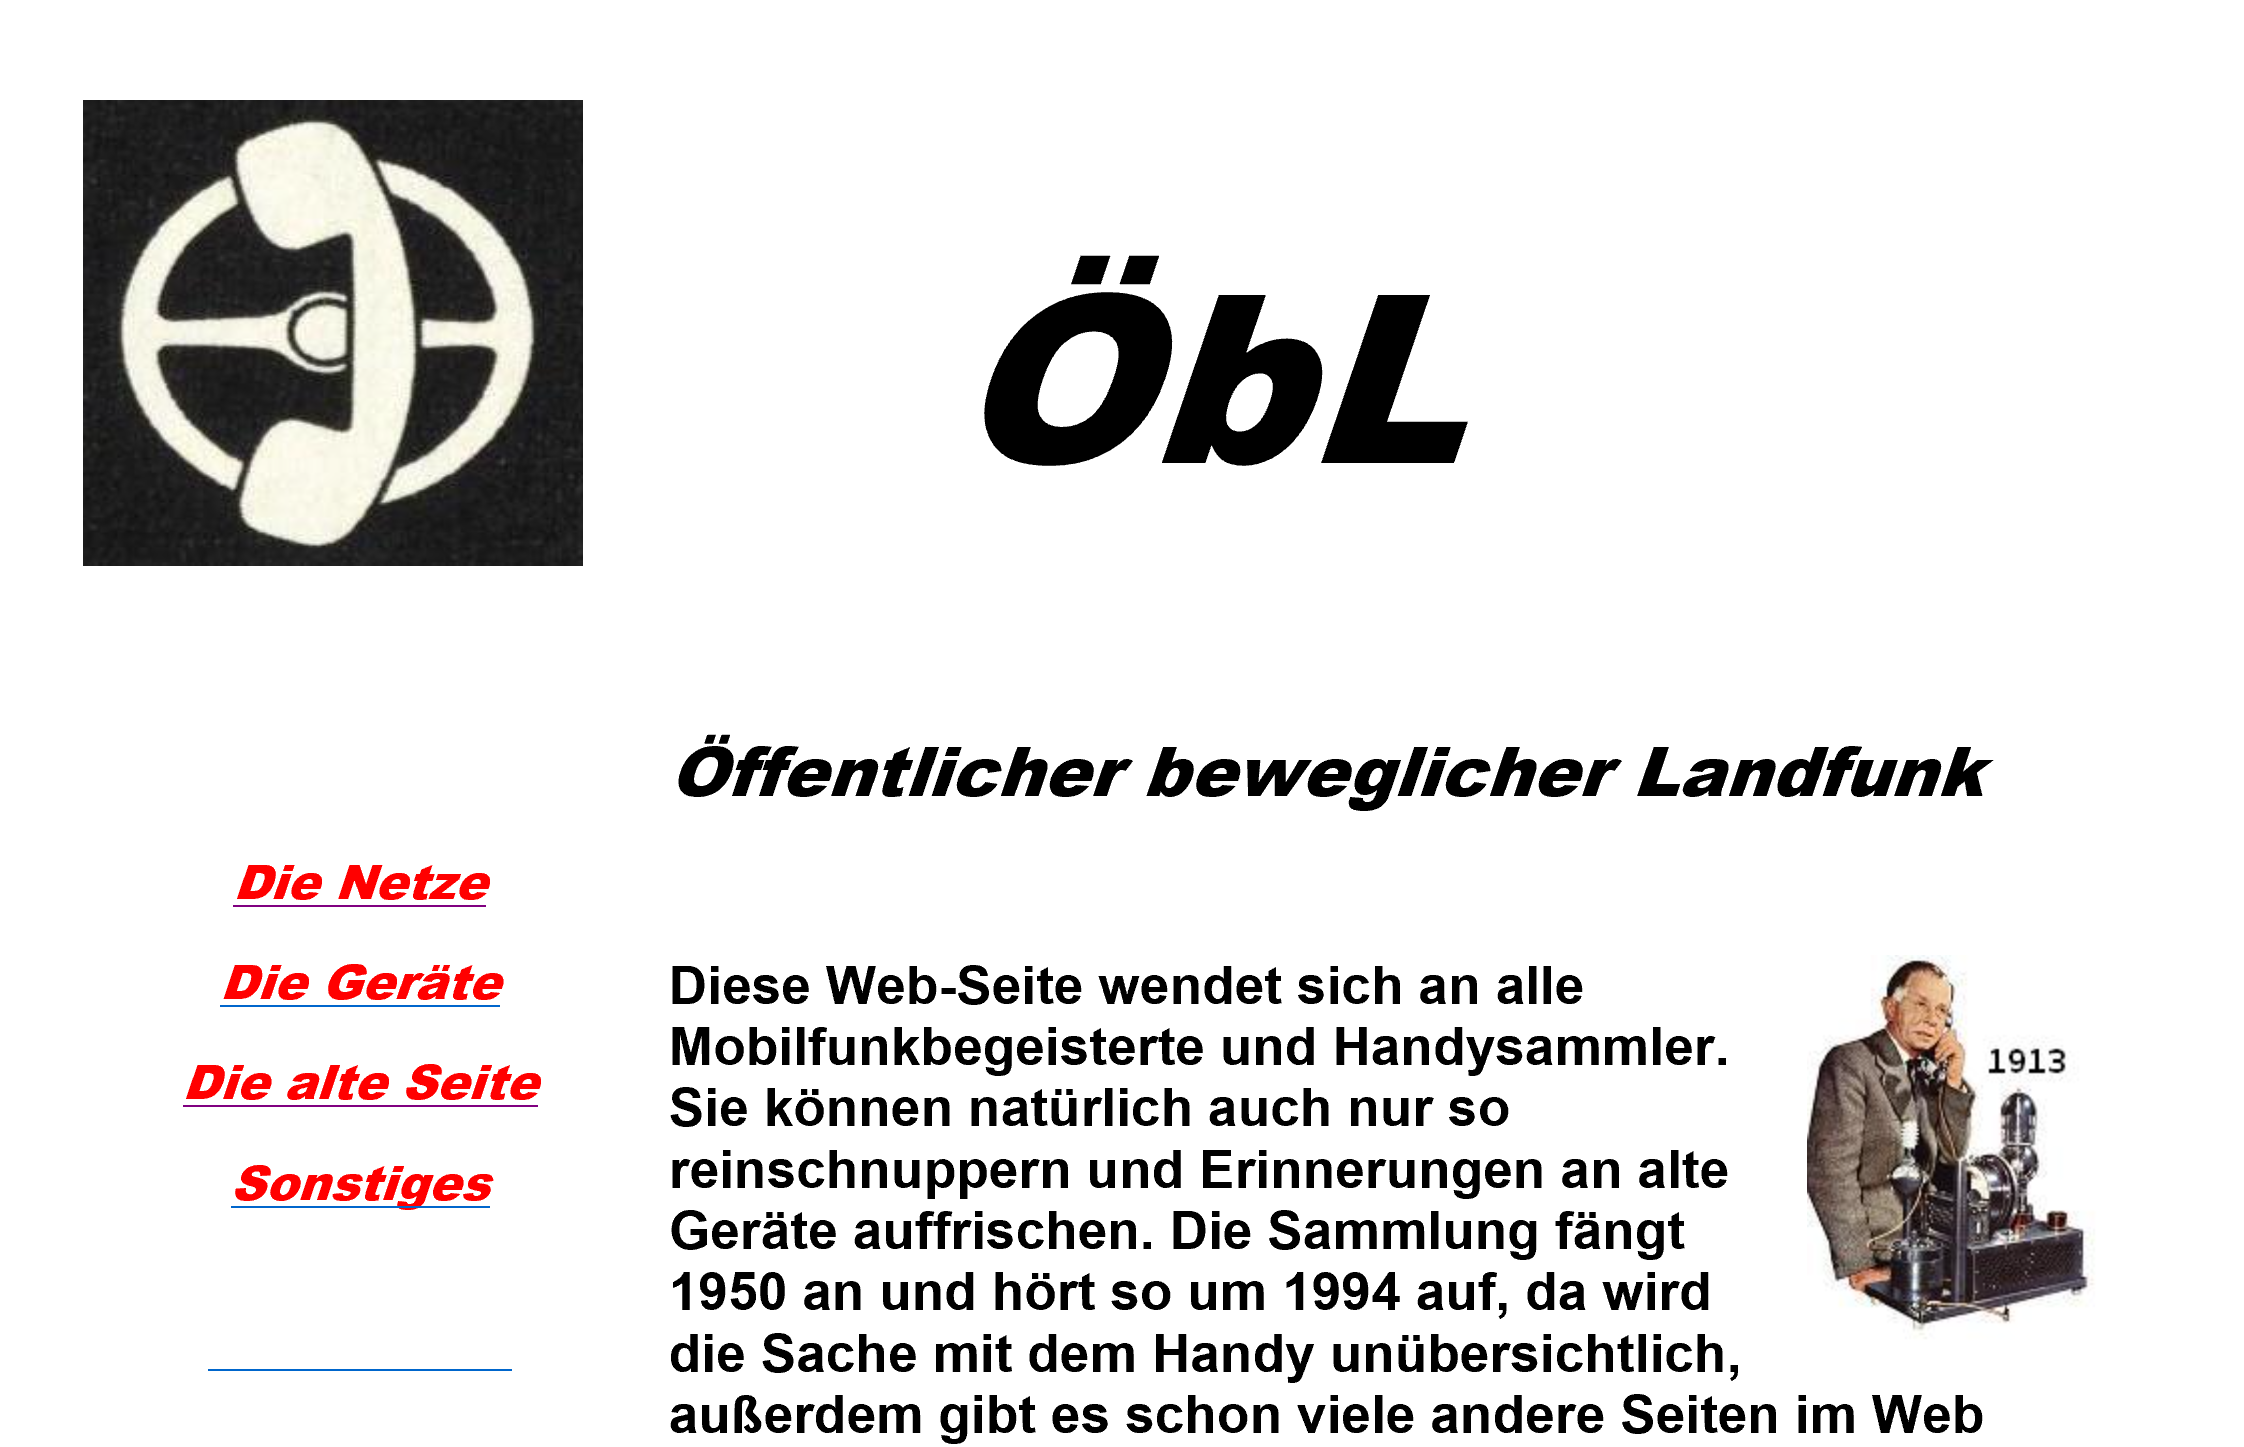 Oebl.de